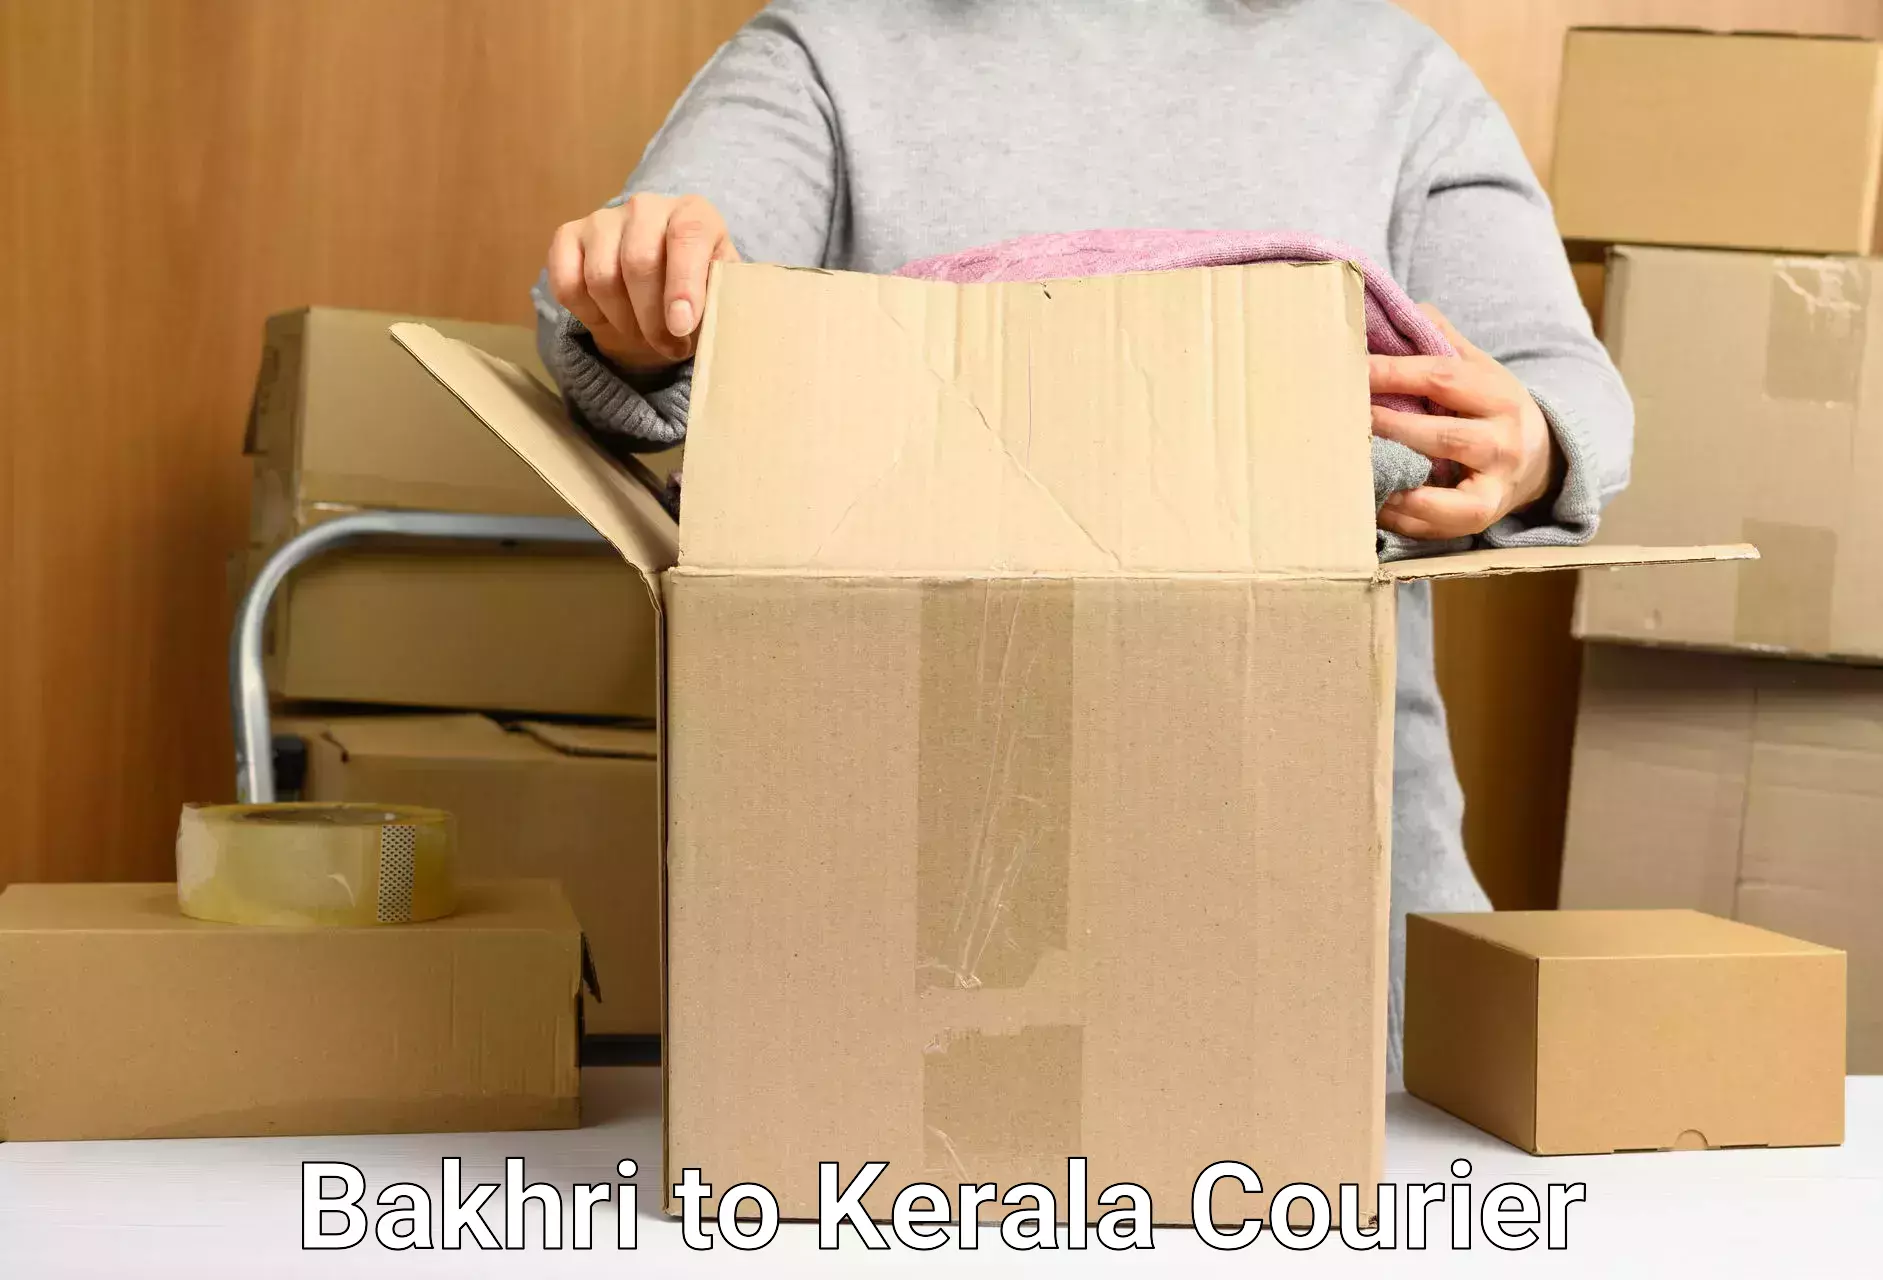 Bulk shipping discounts Bakhri to Kerala